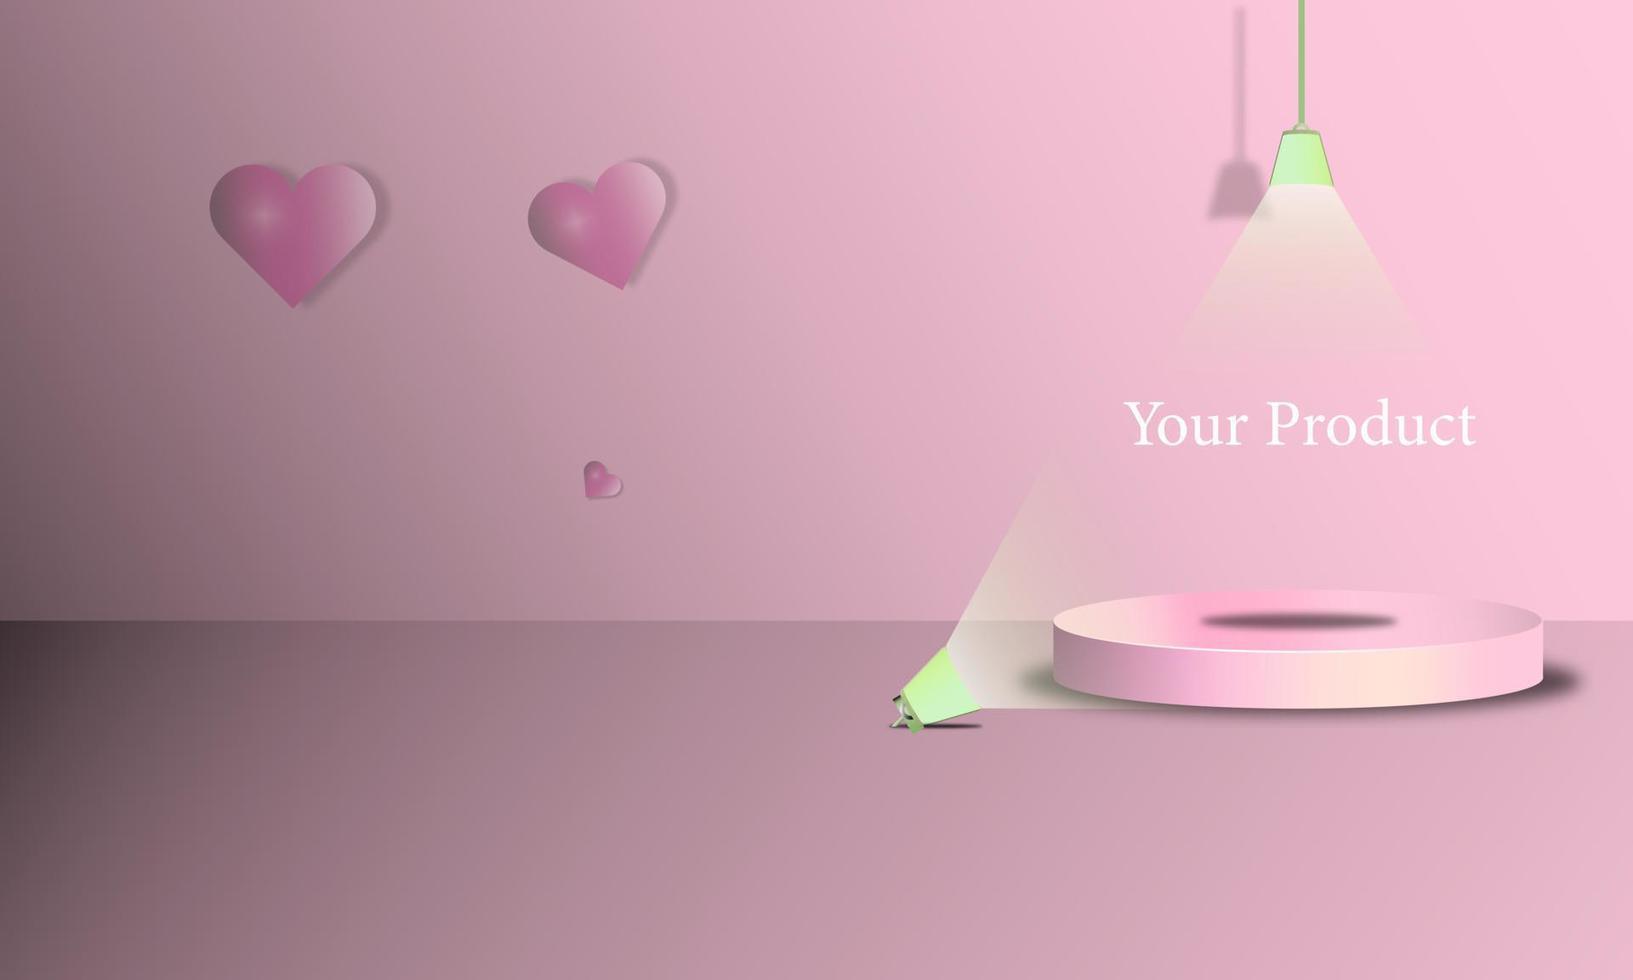 rosa 3d podiumbakgrund för poto produkter butik illustrasi produktkatalog, vektordesign eps 10 vektor